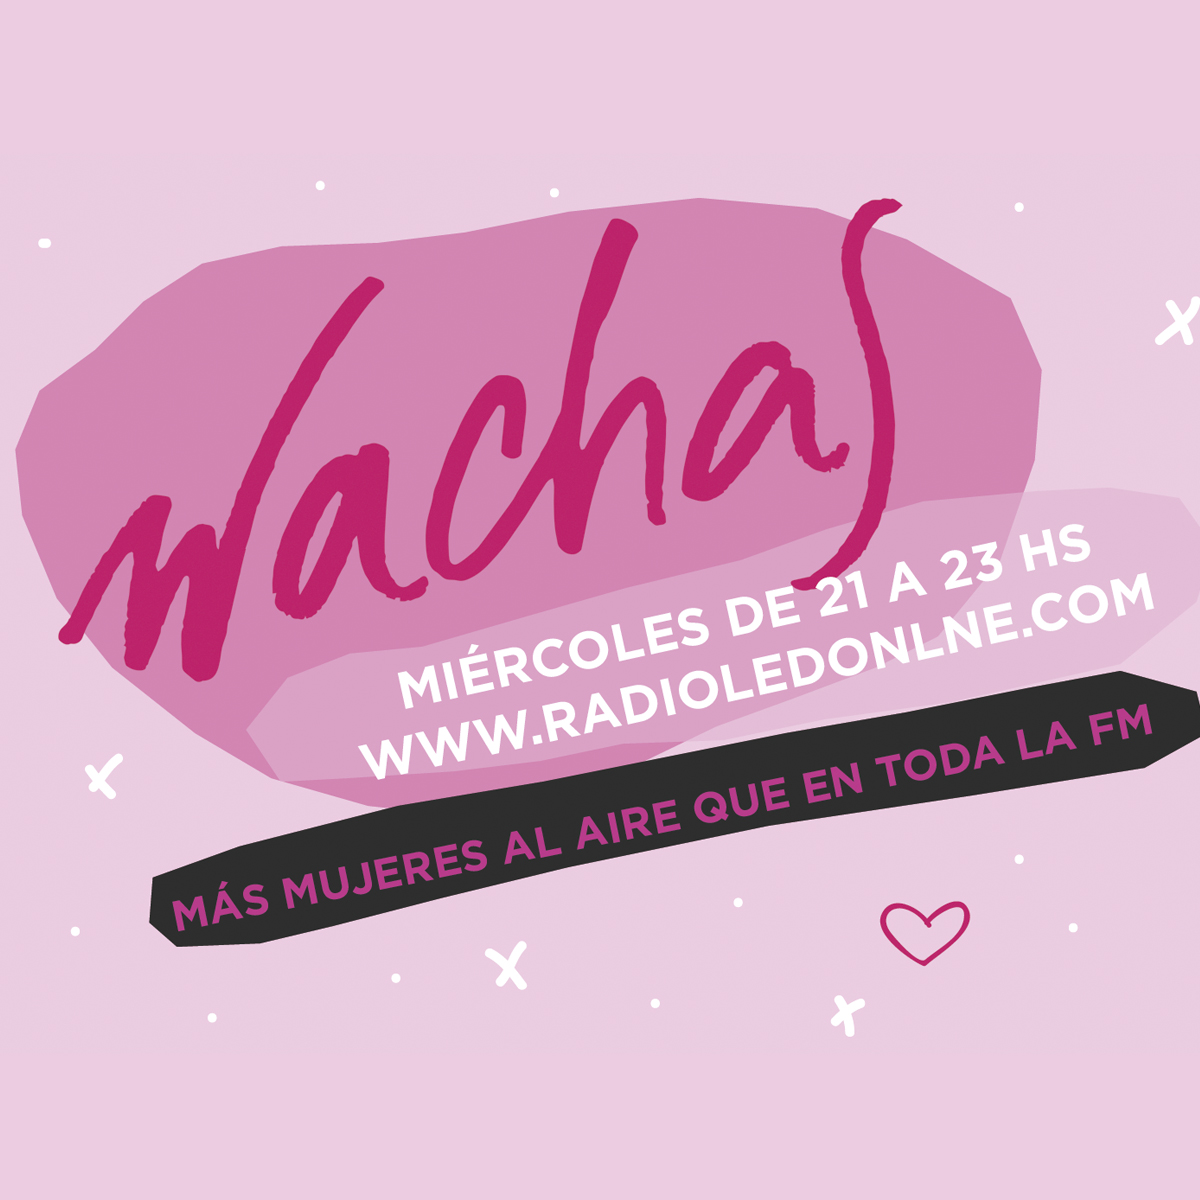 #Podcast Wachas 12.07: ¿Qué preferís que te regalen, plata o porro? | @_manuaguileras #vacunas y más